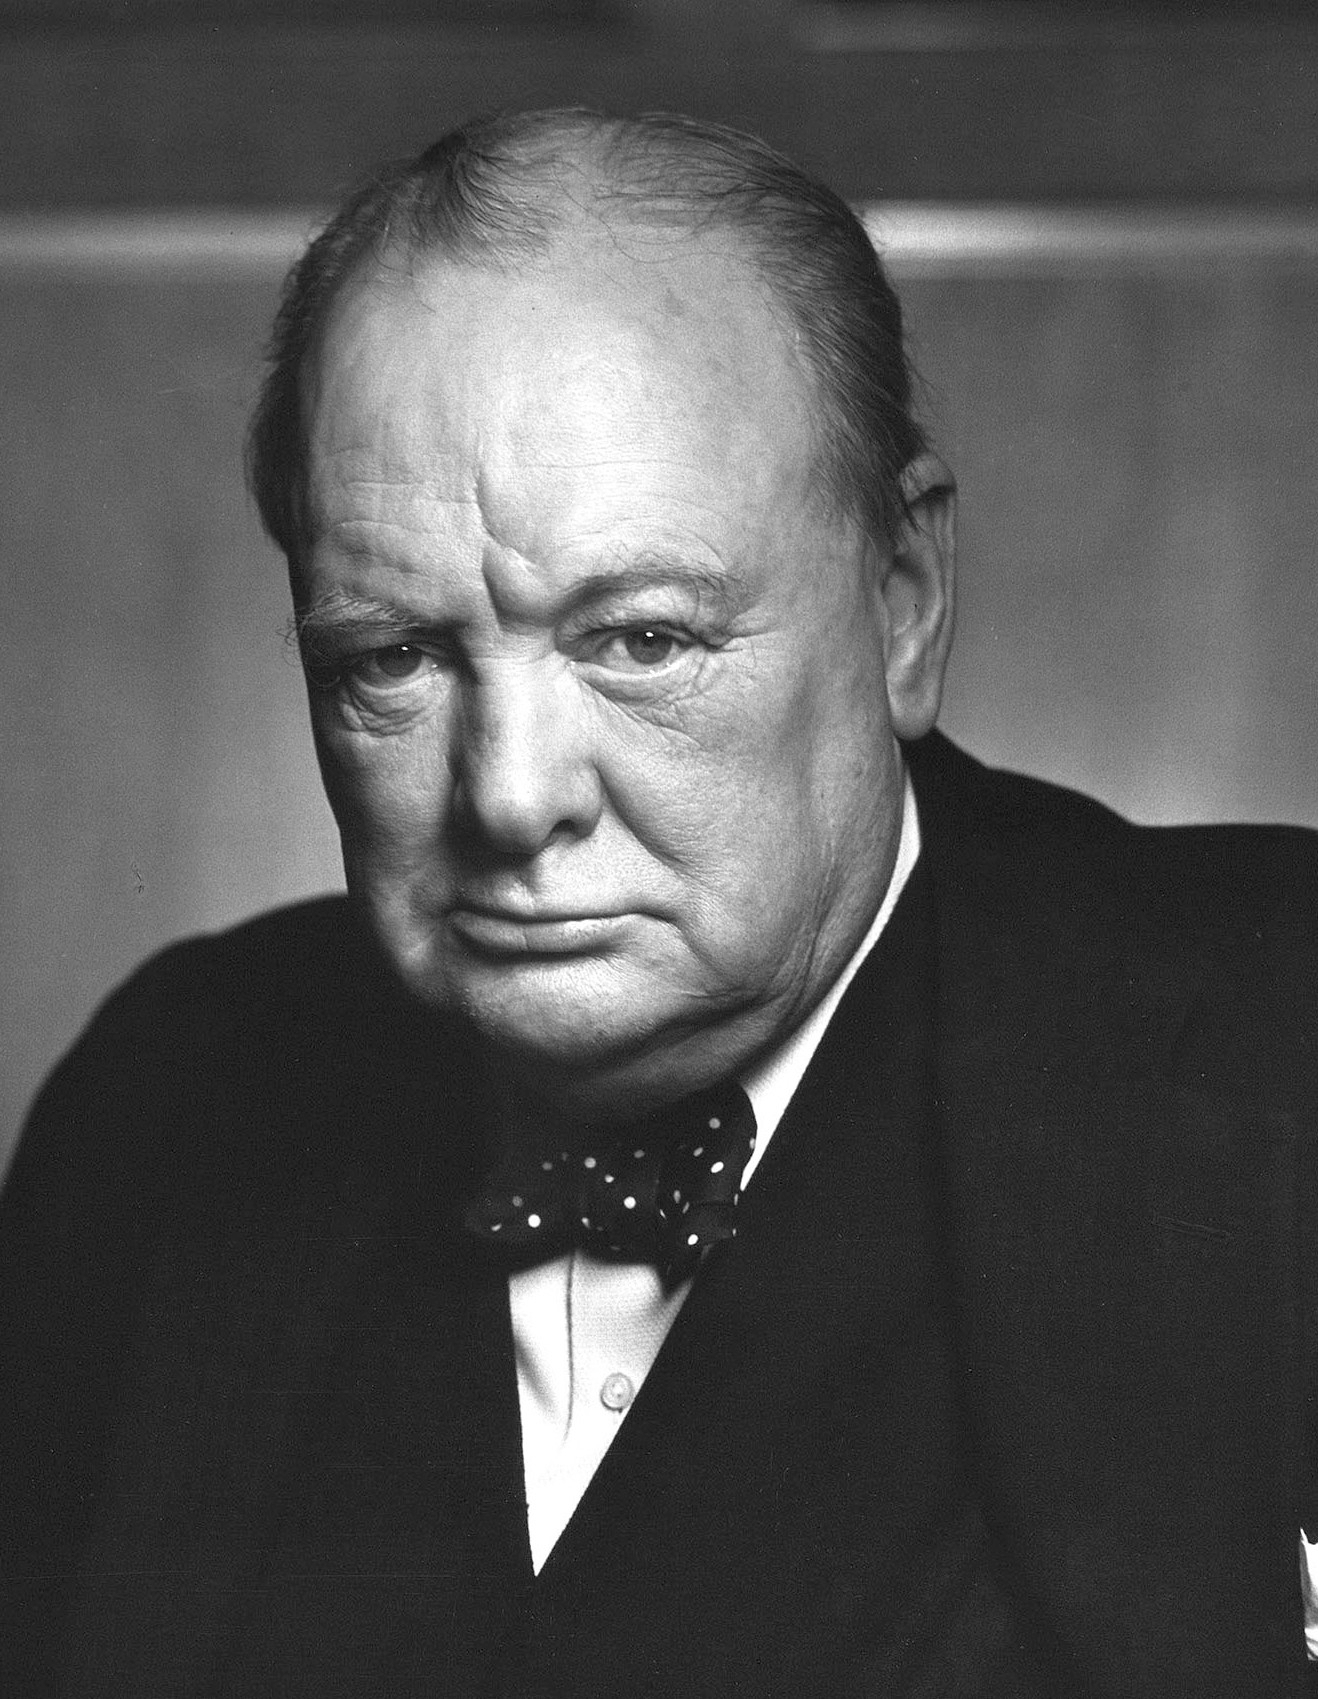 auteur Winston Churchill de la citation ... les grandes routes du futur seront dégagées, non seulement pour nous mais pour tous, non seulement pour notre temps mais pour un siècle à venir.